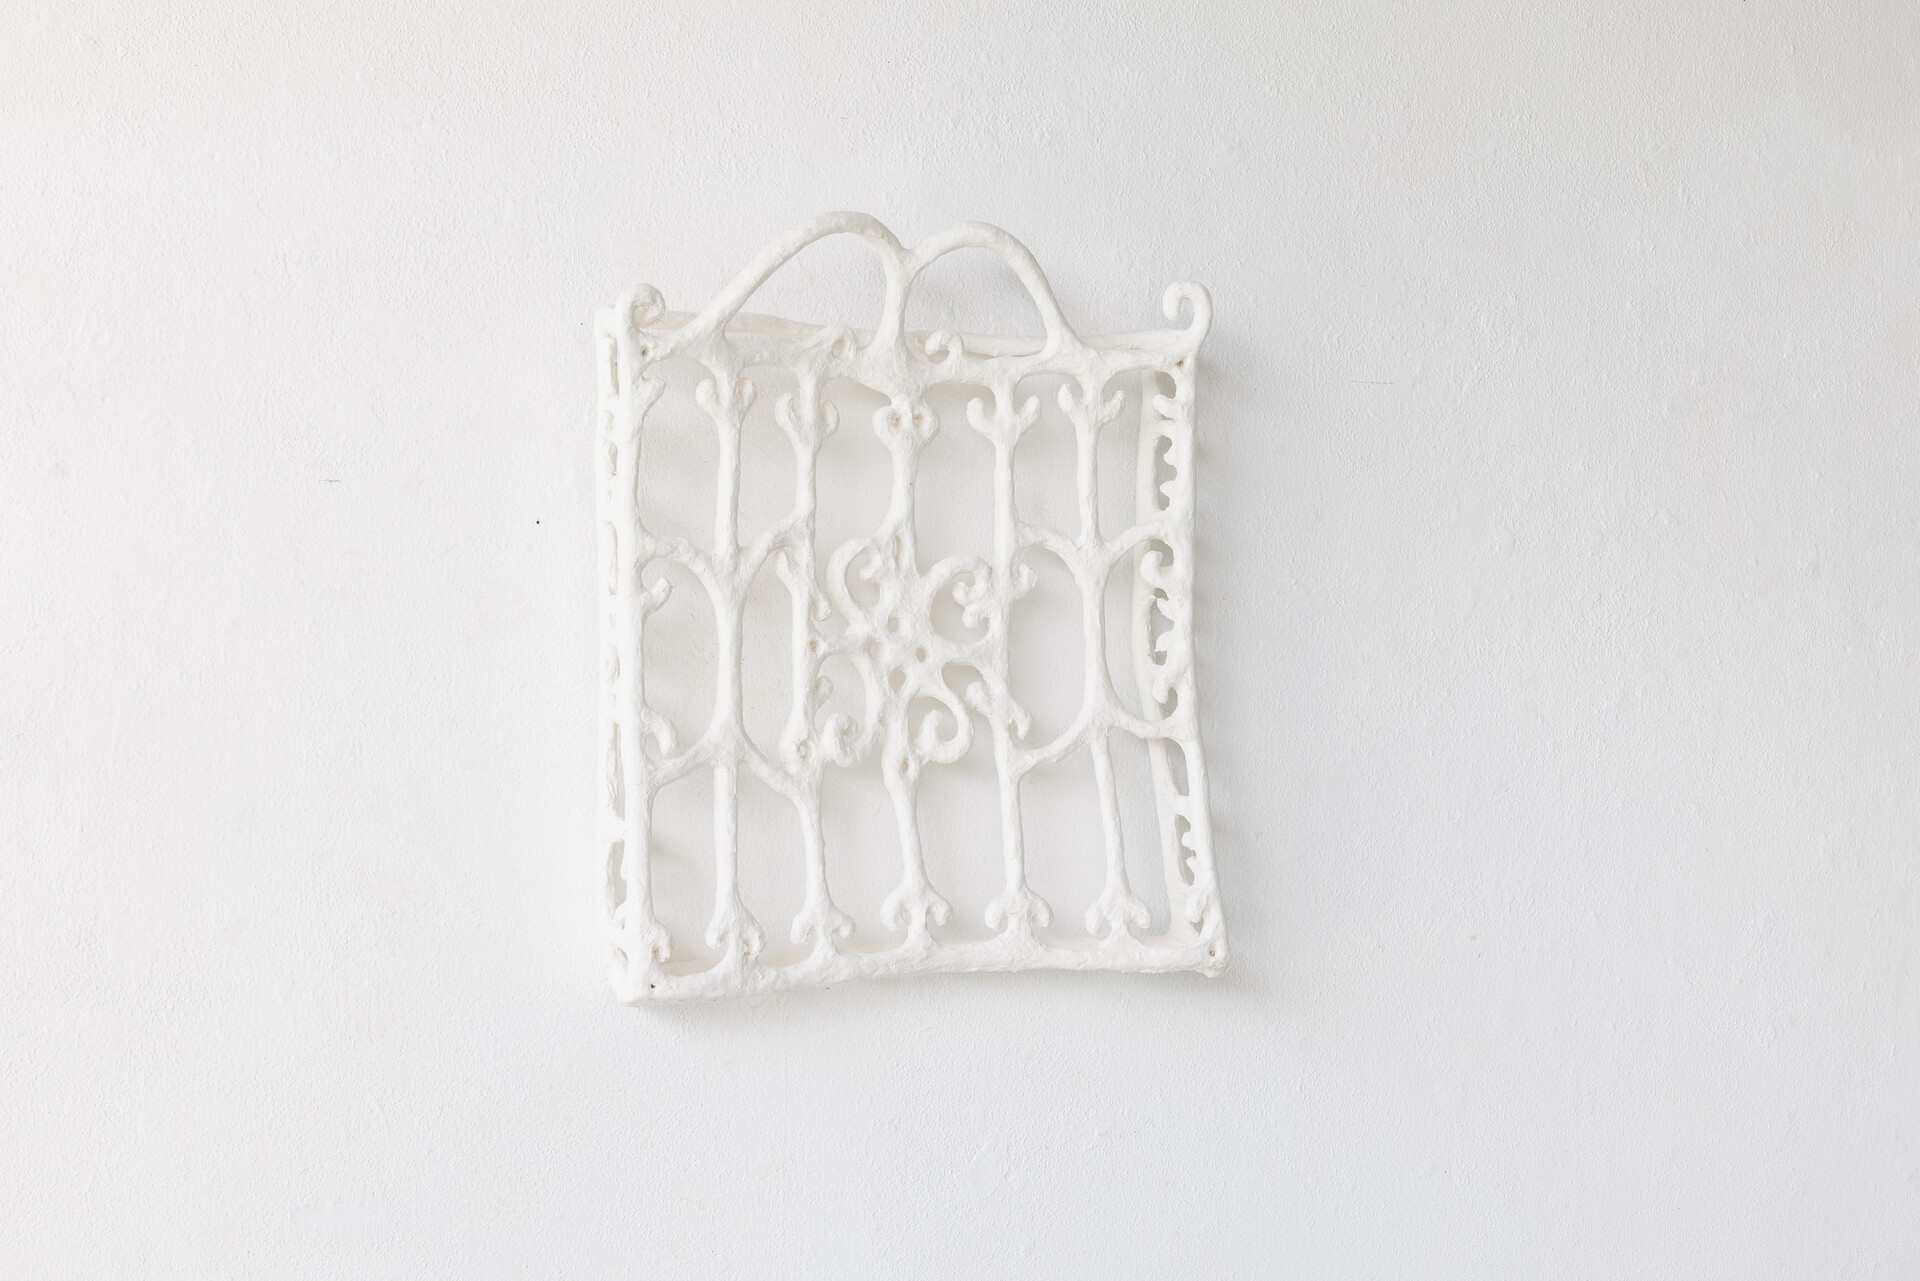 Fenstergitter Saragossa, 124×99×21cm, 2021, Paper, Wire